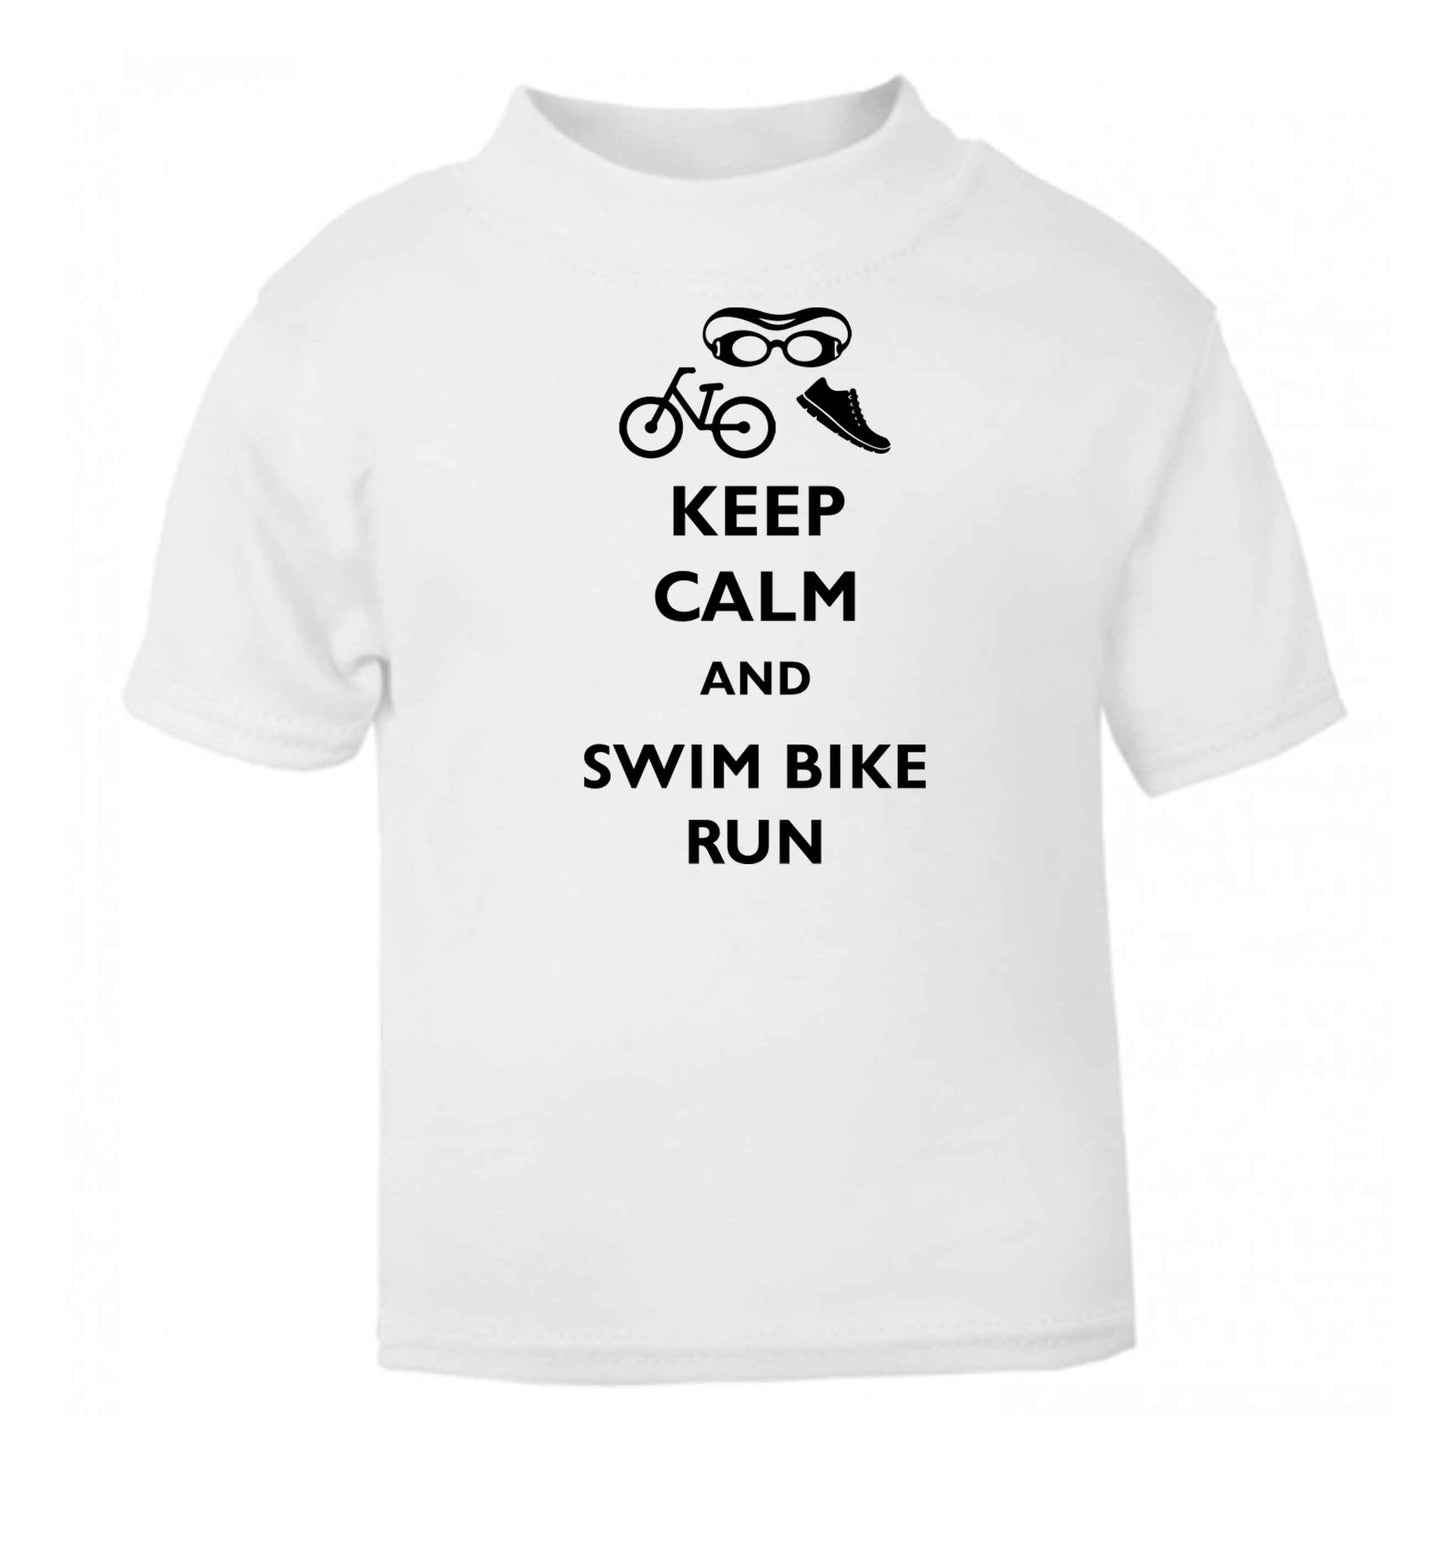 Keep calm and swim bike run white baby toddler Tshirt 2 Years